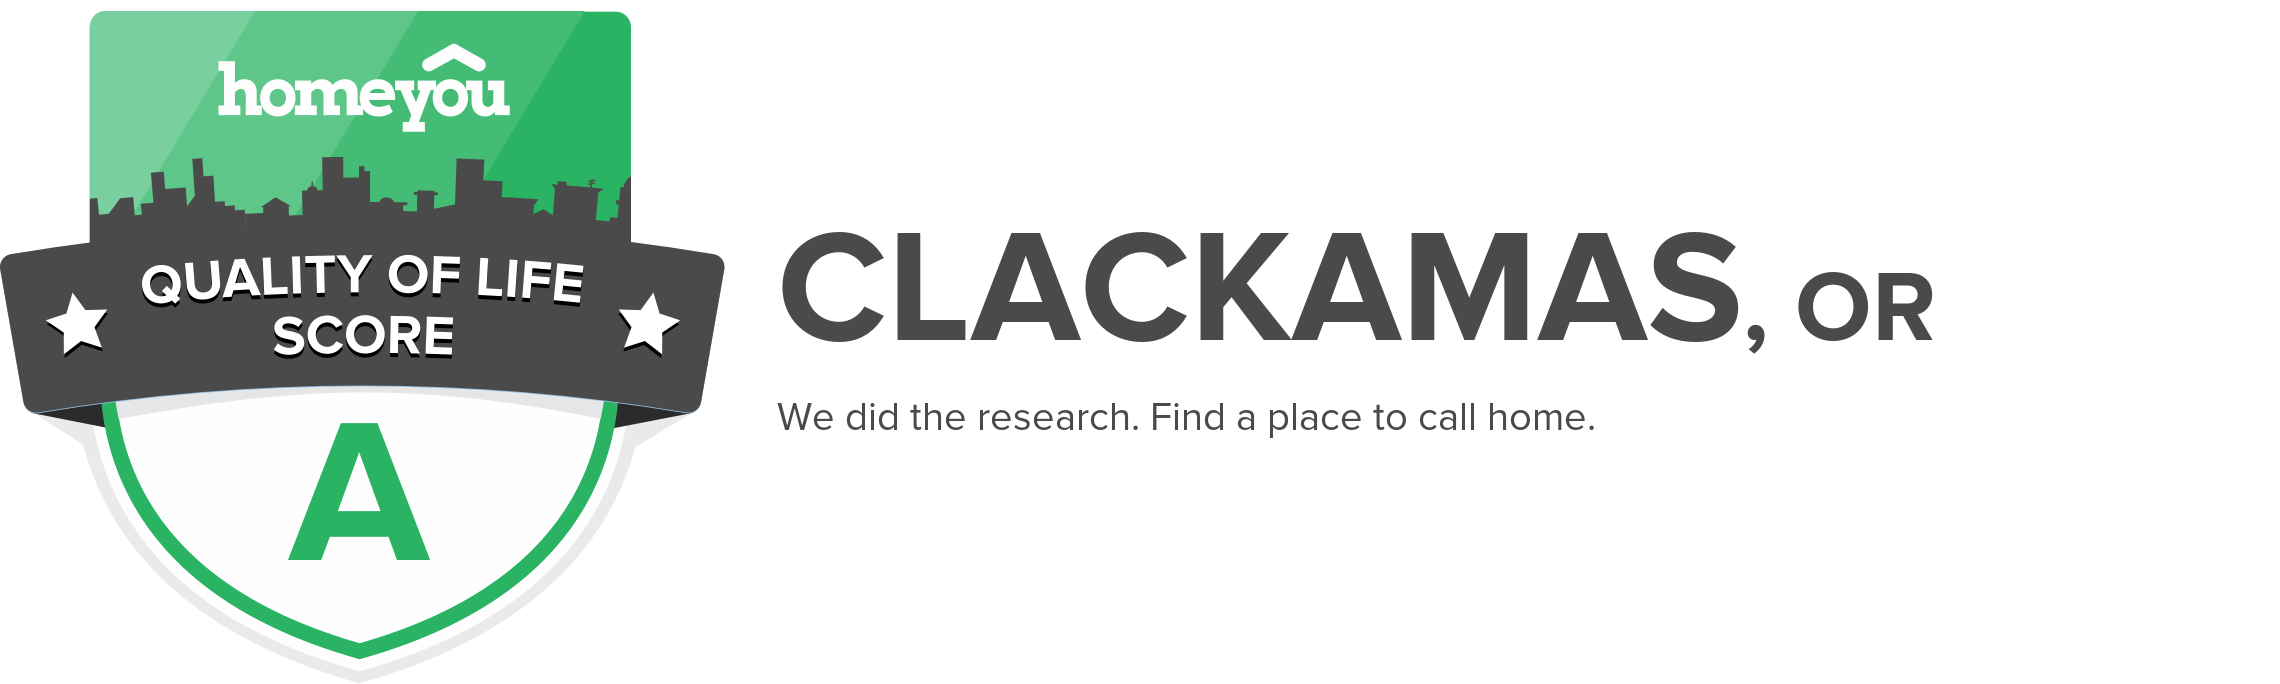 Clackamas, OR